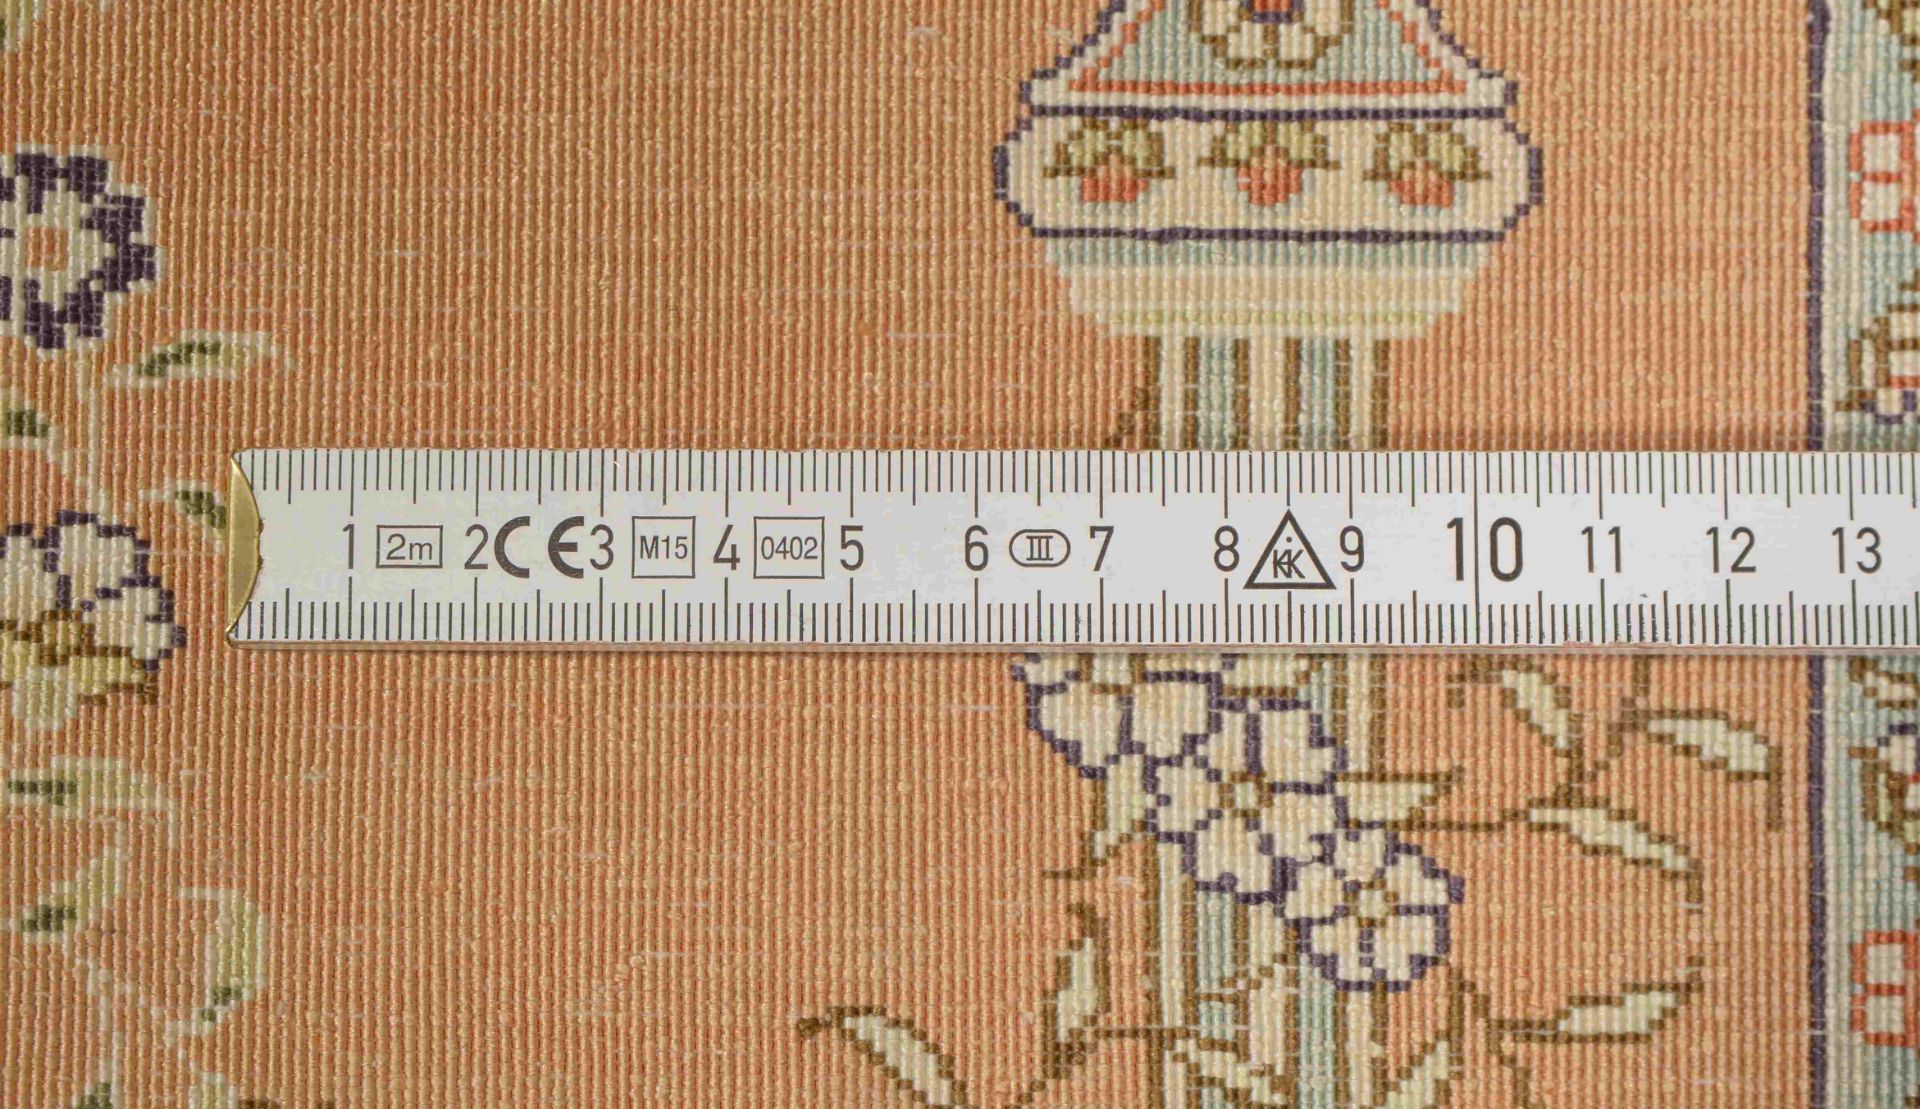 Hereke-Seidenteppich (wohl China), sehr feine Knüpfung, 1 Mio. Knoten/qm, signiert, dichter Flor - i - Bild 2 aus 3